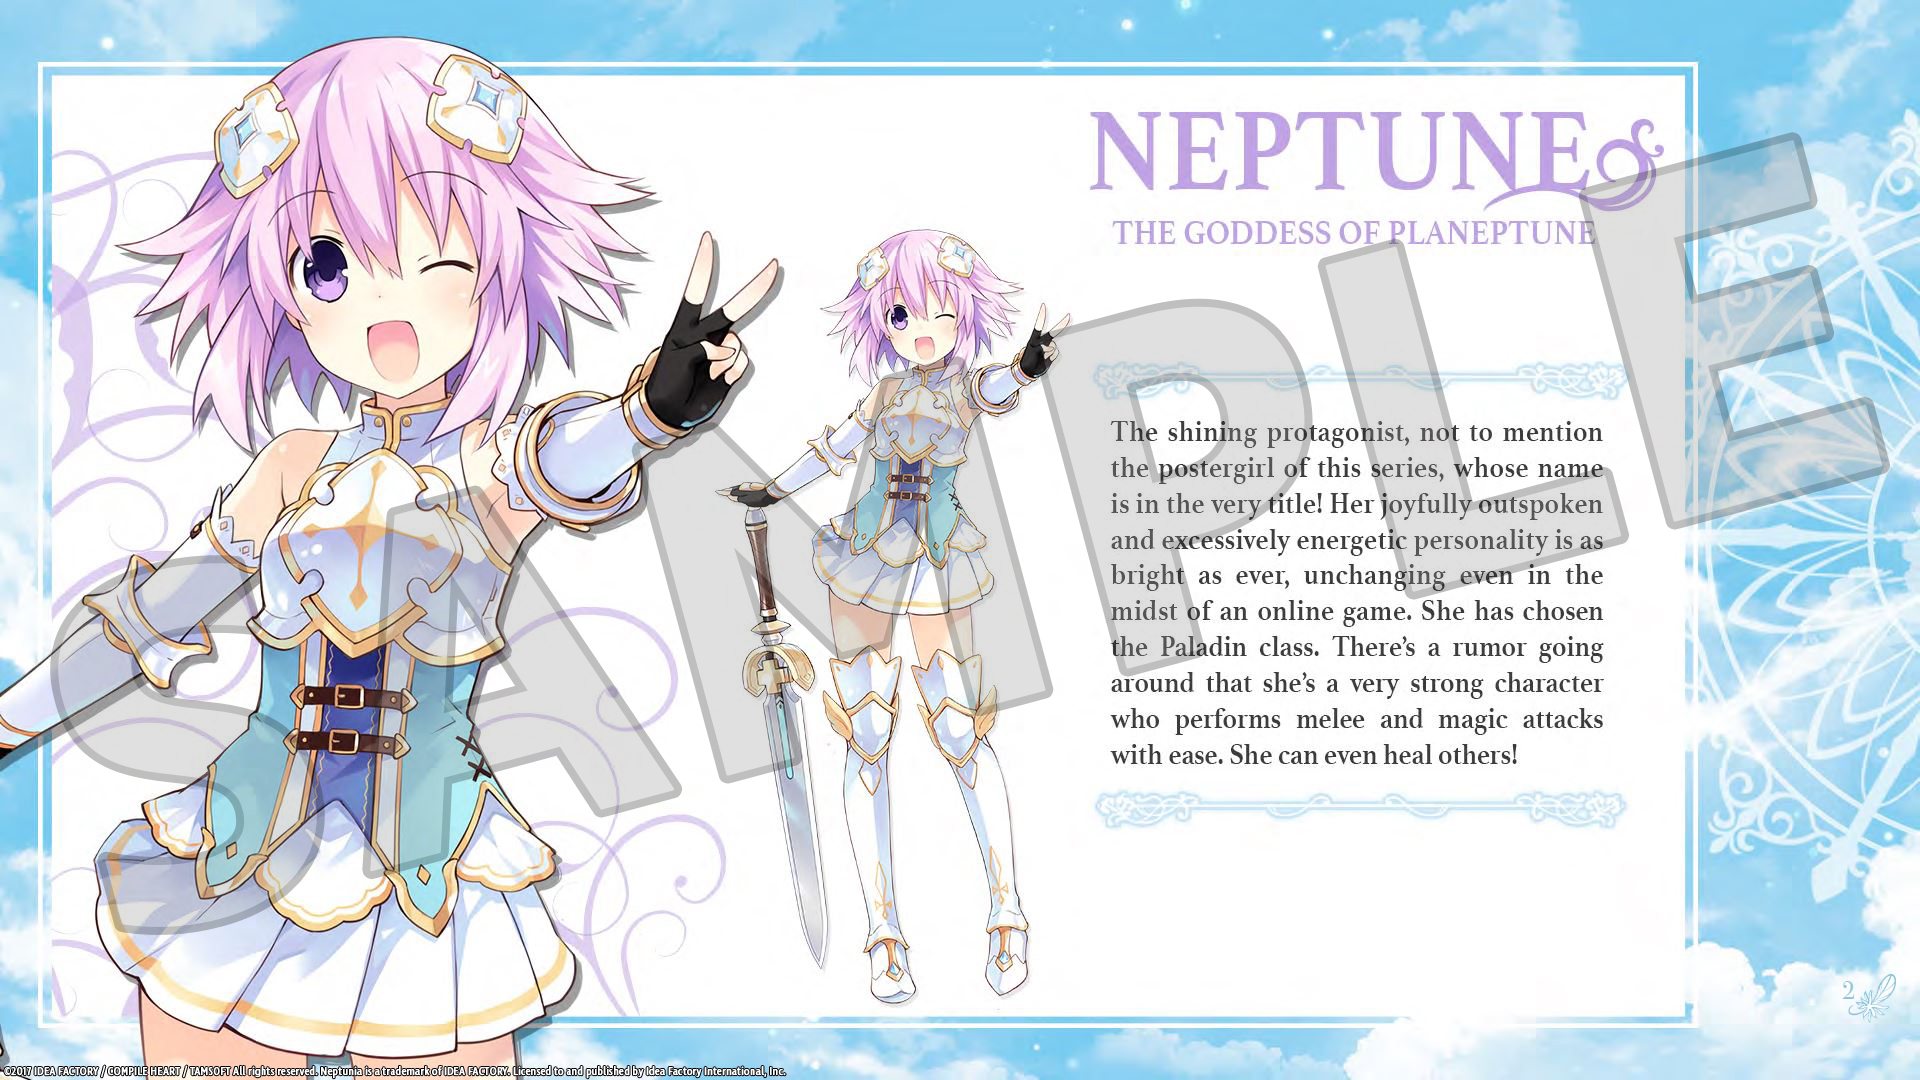 [$ 1.69] Cyberdimension Neptunia: 4 Goddesses Online - Deluxe Pack DLC Steam CD Key